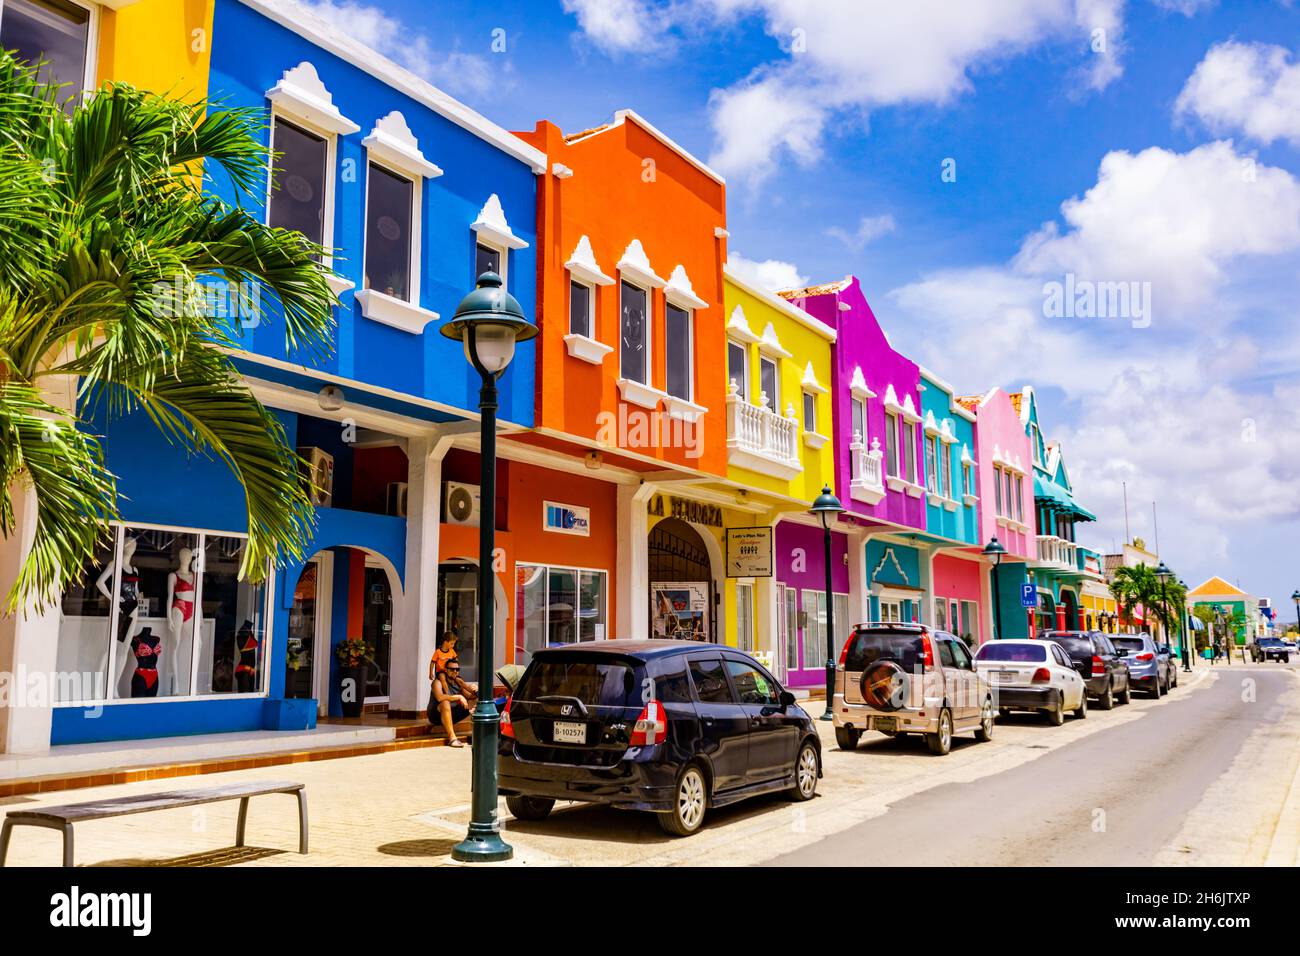 Les beaux bâtiments colorés du centre-ville de Kralendijk, Bonaire, Antilles néerlandaises, Caraïbes, Amérique centrale Banque D'Images